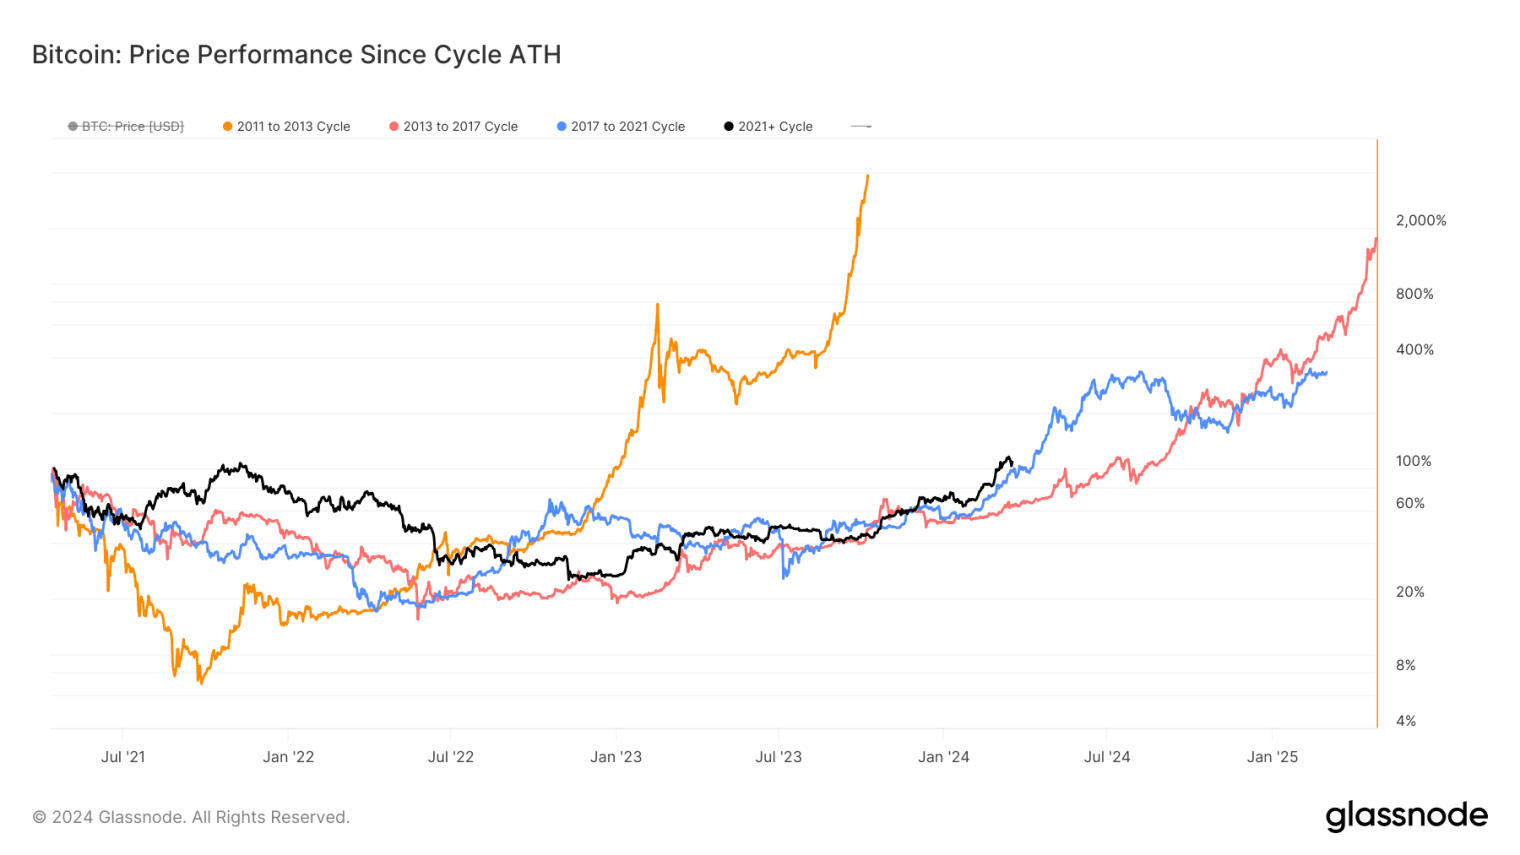 Wzrost Bitcoina podczas głównych cykli rynkowych. Dane: Glassnode.